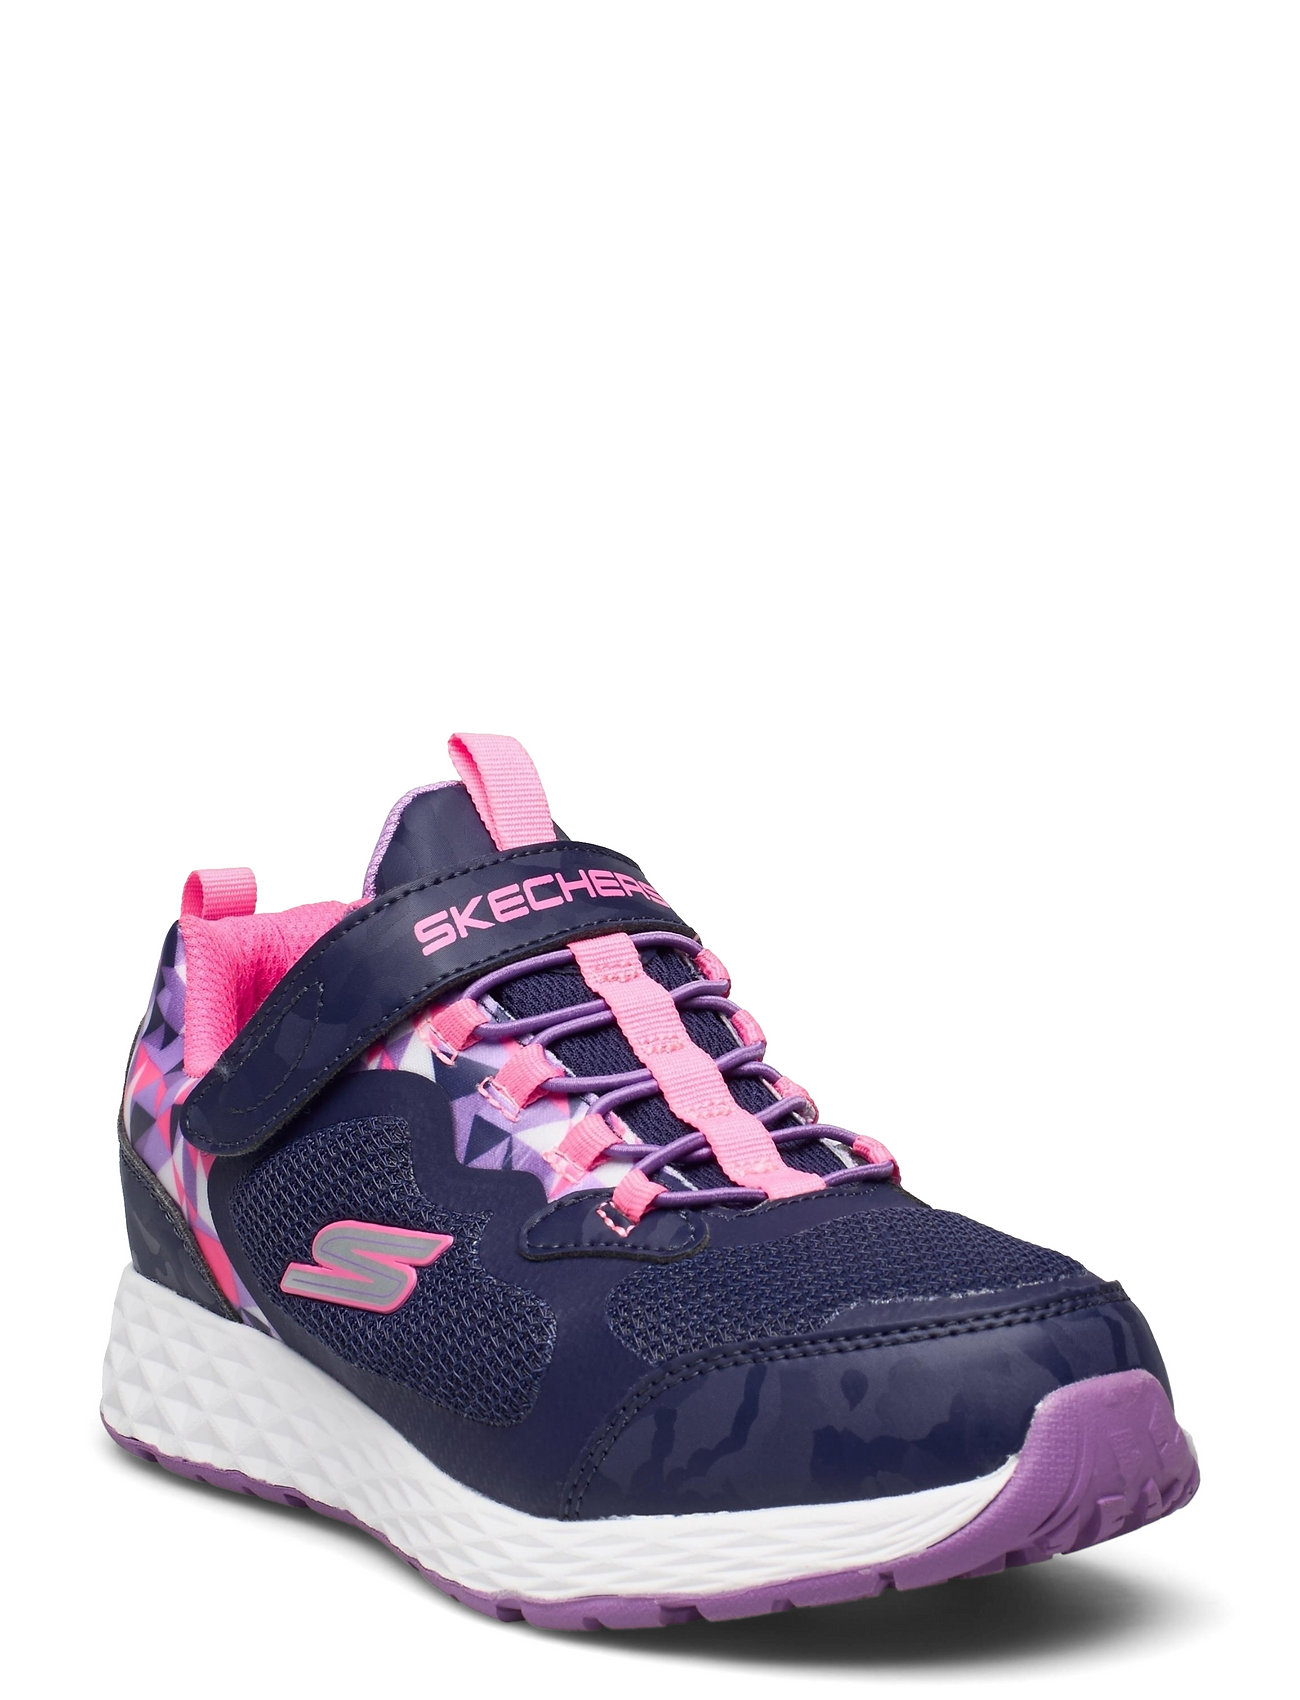 Girls Treas Lite - Waterproof Low-top Sneakers Pink Skechers